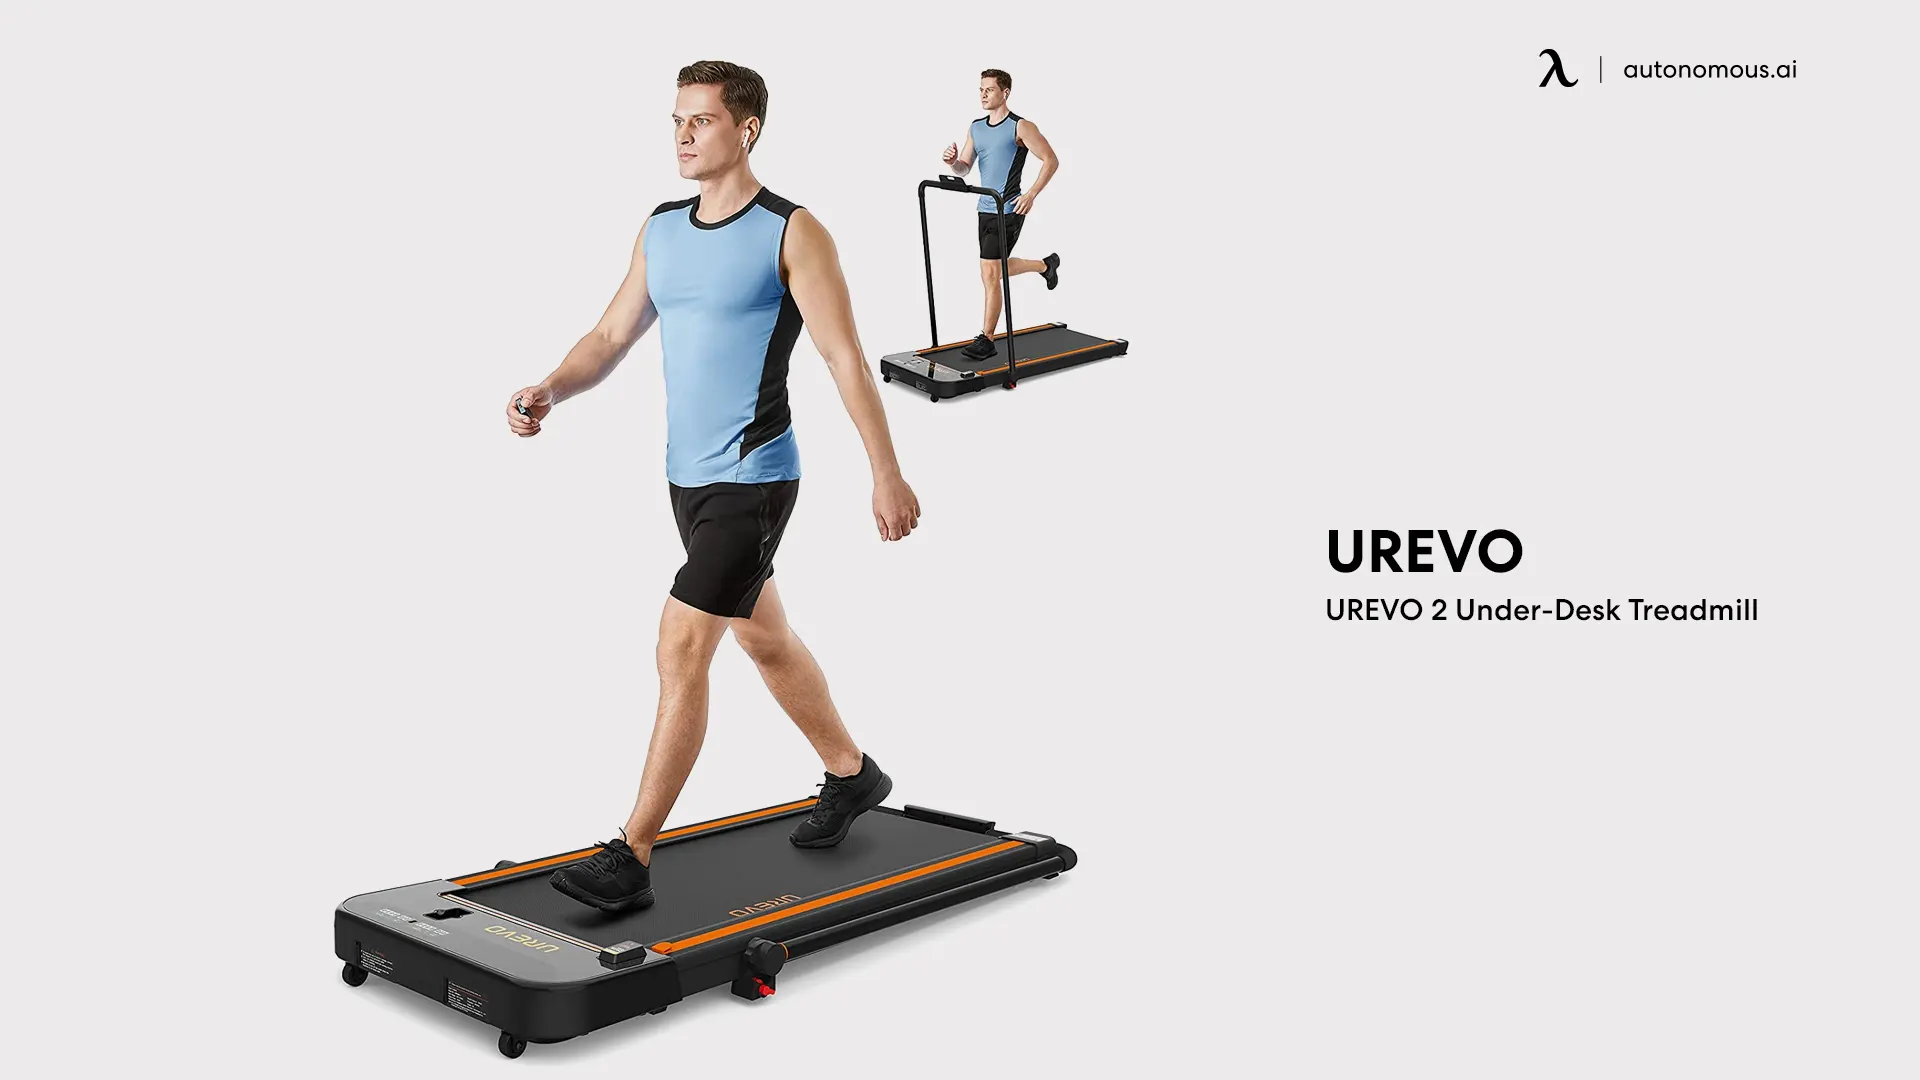 UREVO 2 Under-Desk Treadmill